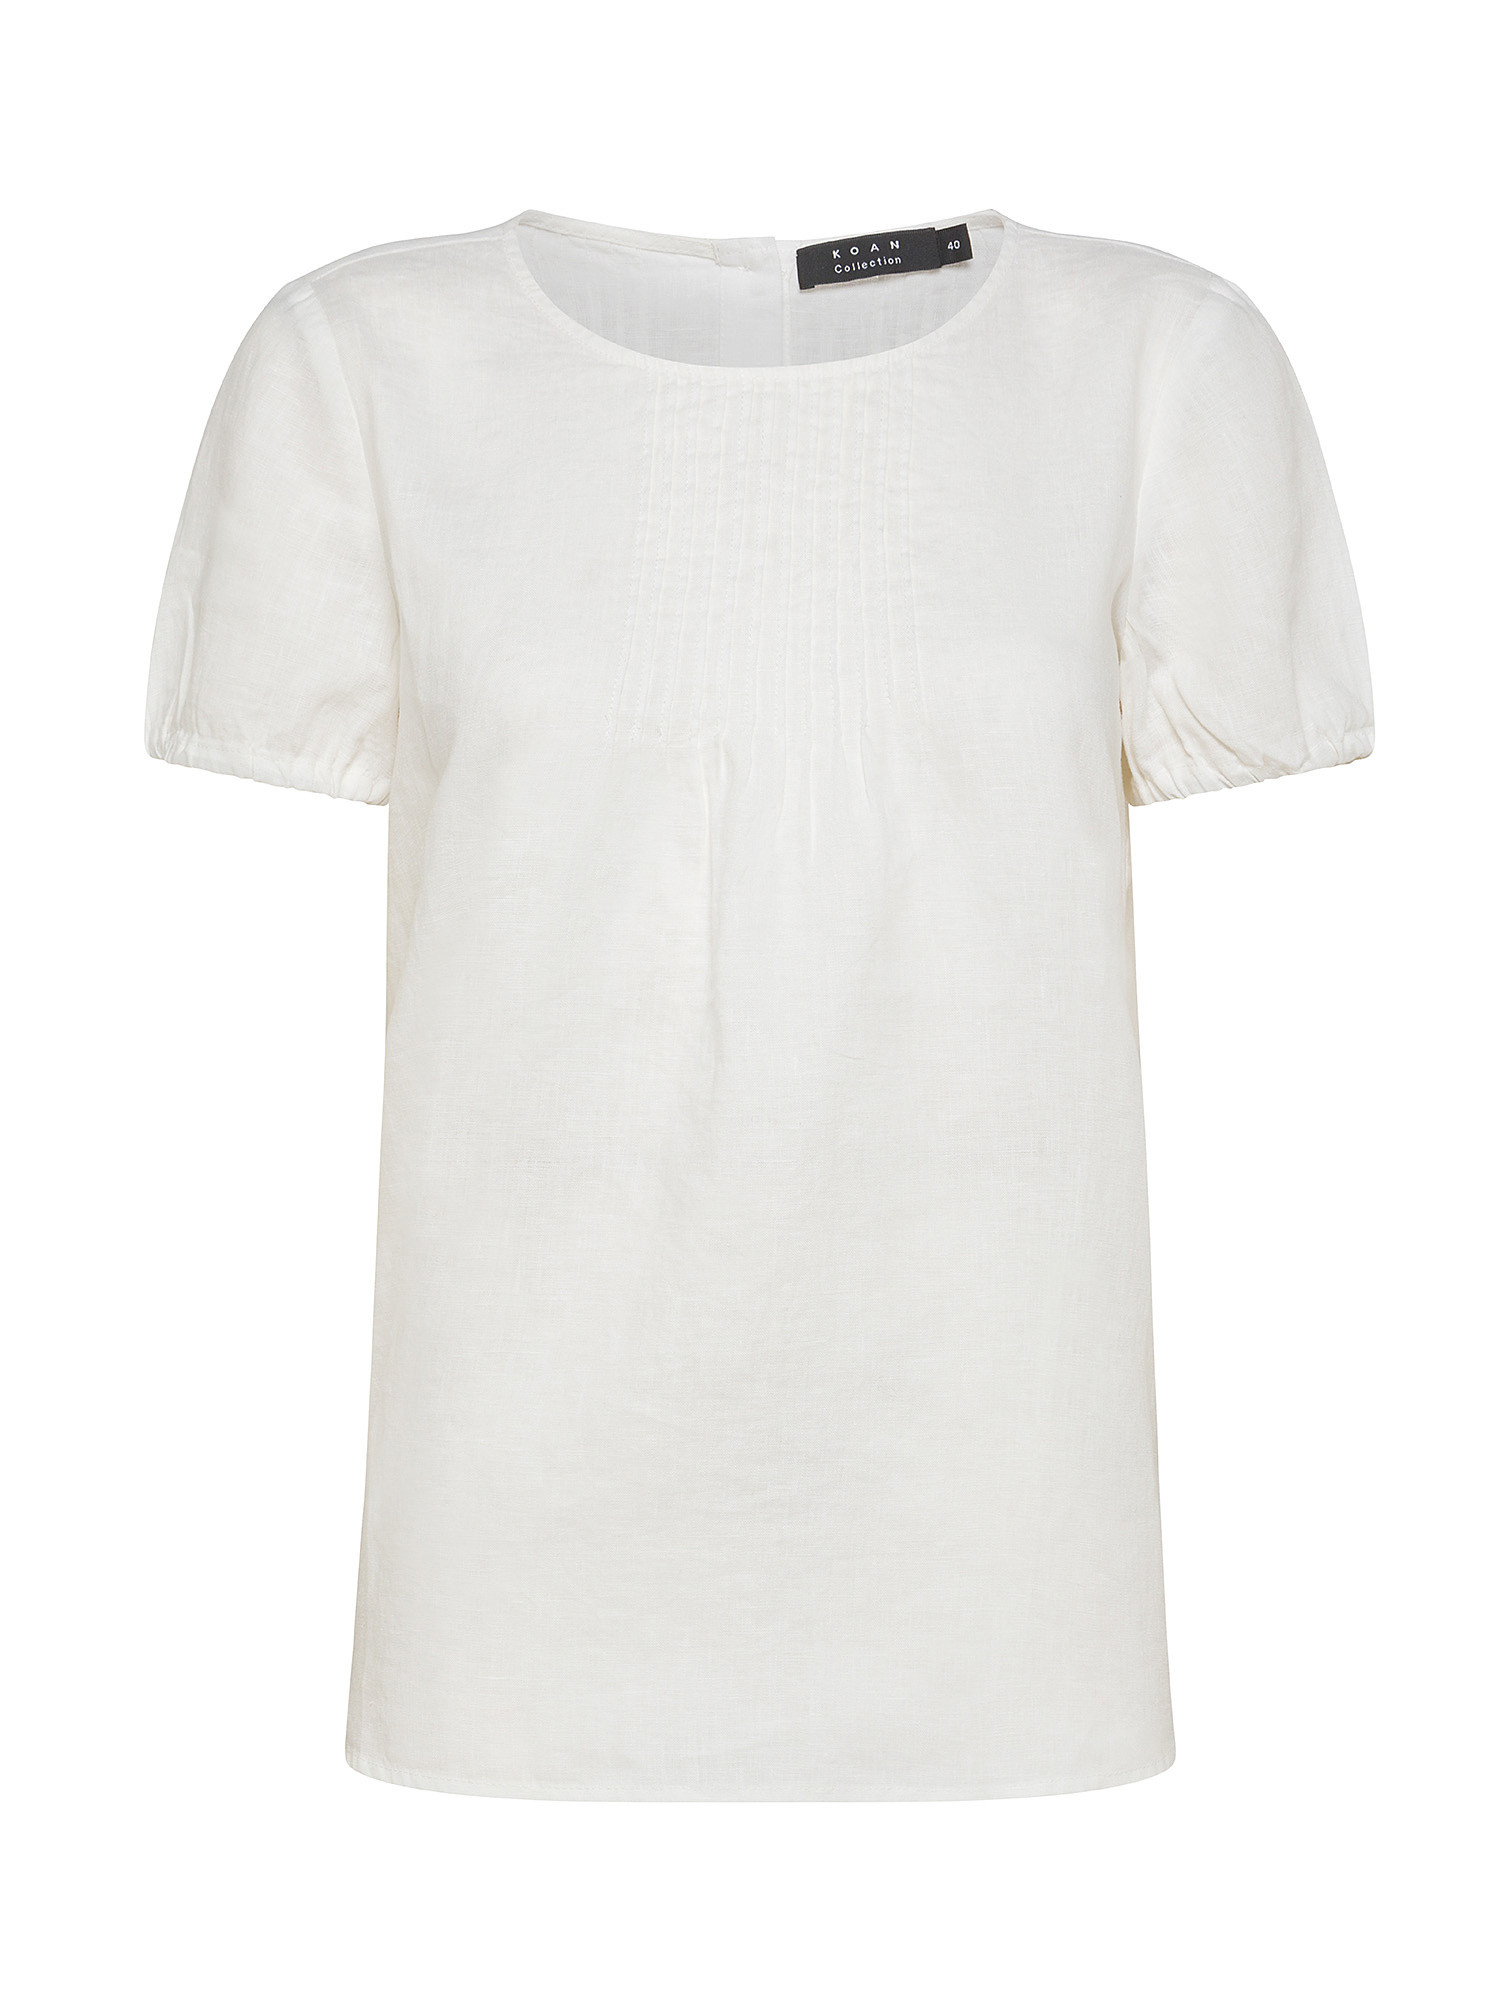 Koan - Blusa in lino, Bianco, large image number 0